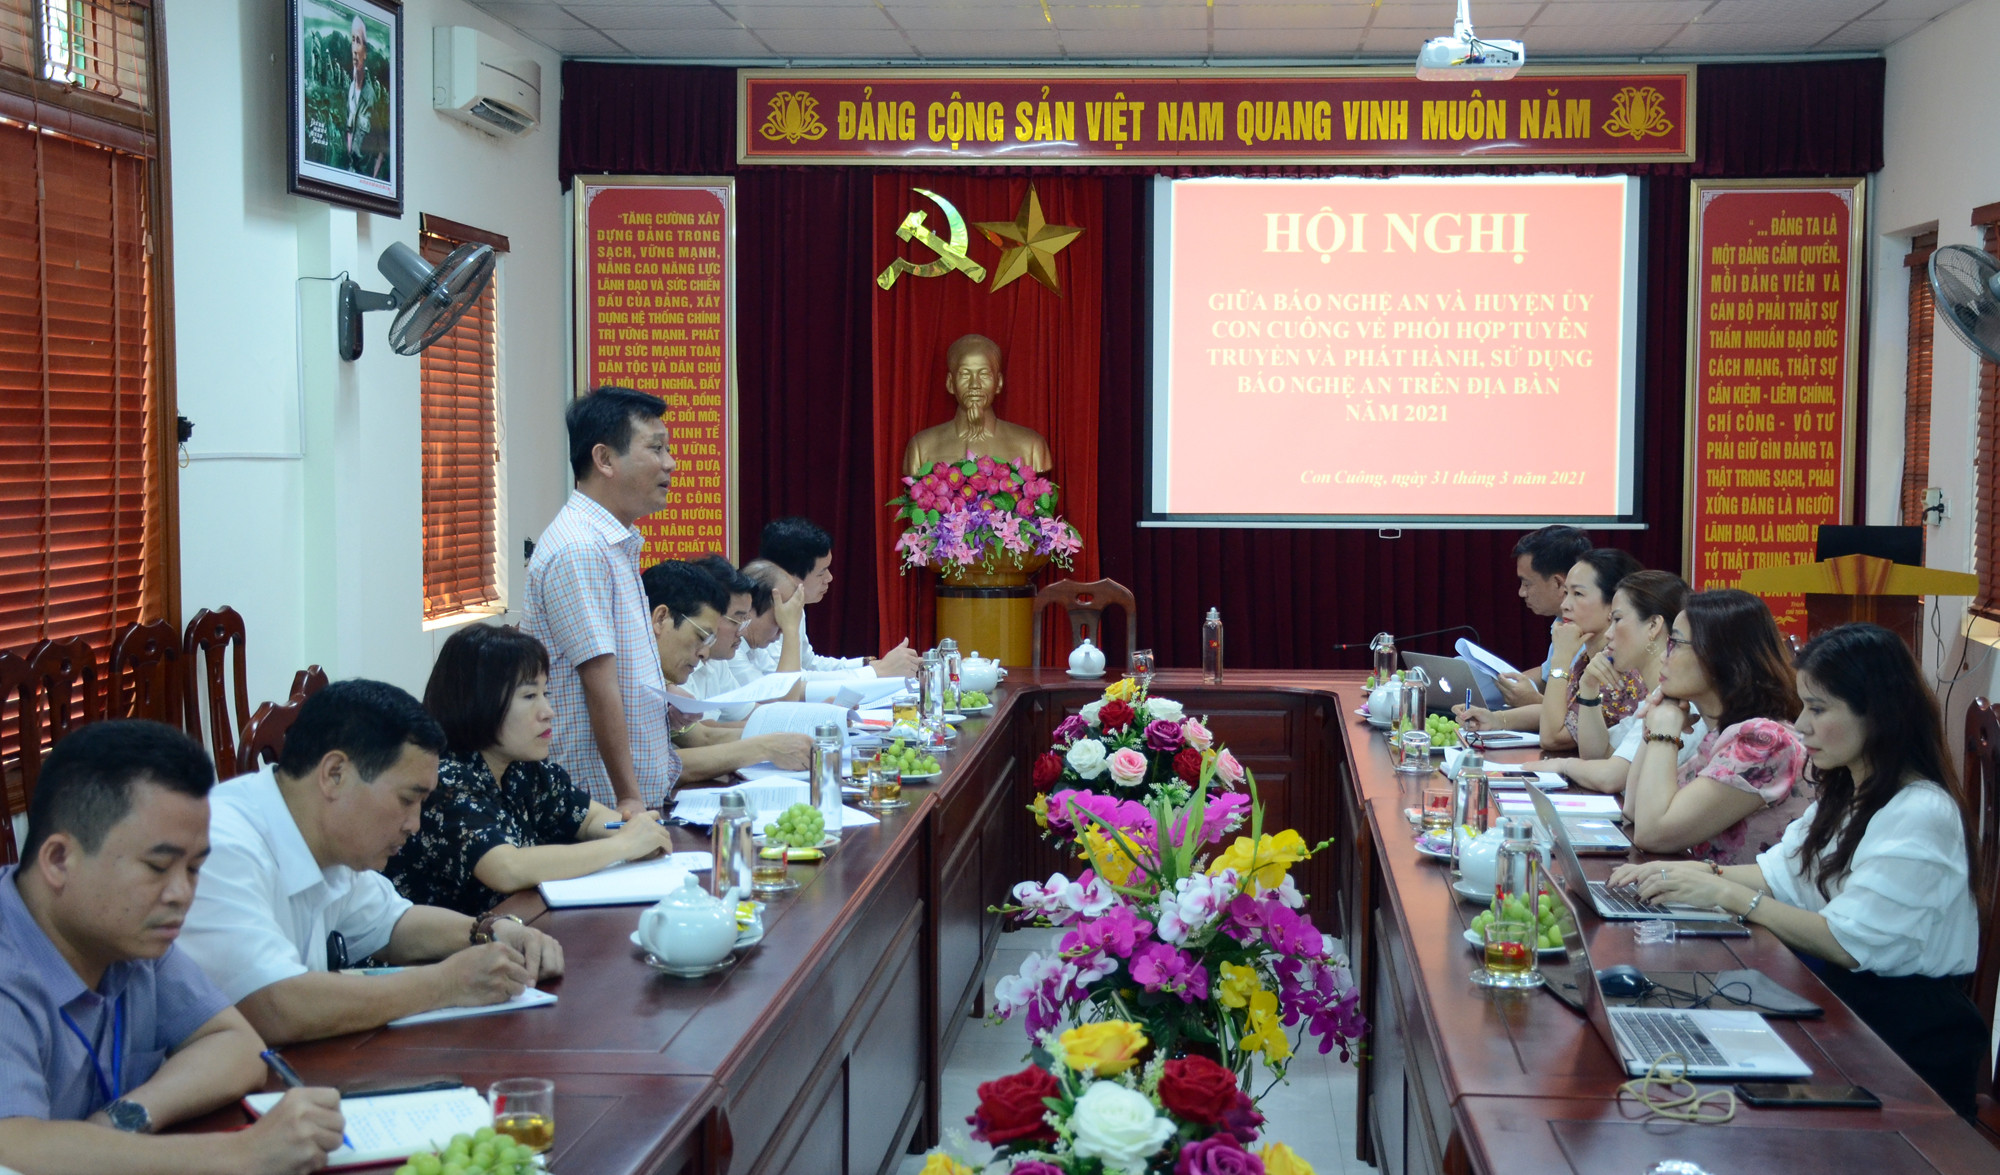 Báo Nghệ An và huyện Con Cuông tổ chức đánh giá về công tác phối hợp tuyên truyền và phát hành, sử dụng báo Đảng trên địa bàn năm 2020, triển khai nhiệm vụ năm 2021. Ảnh: Thành Chung